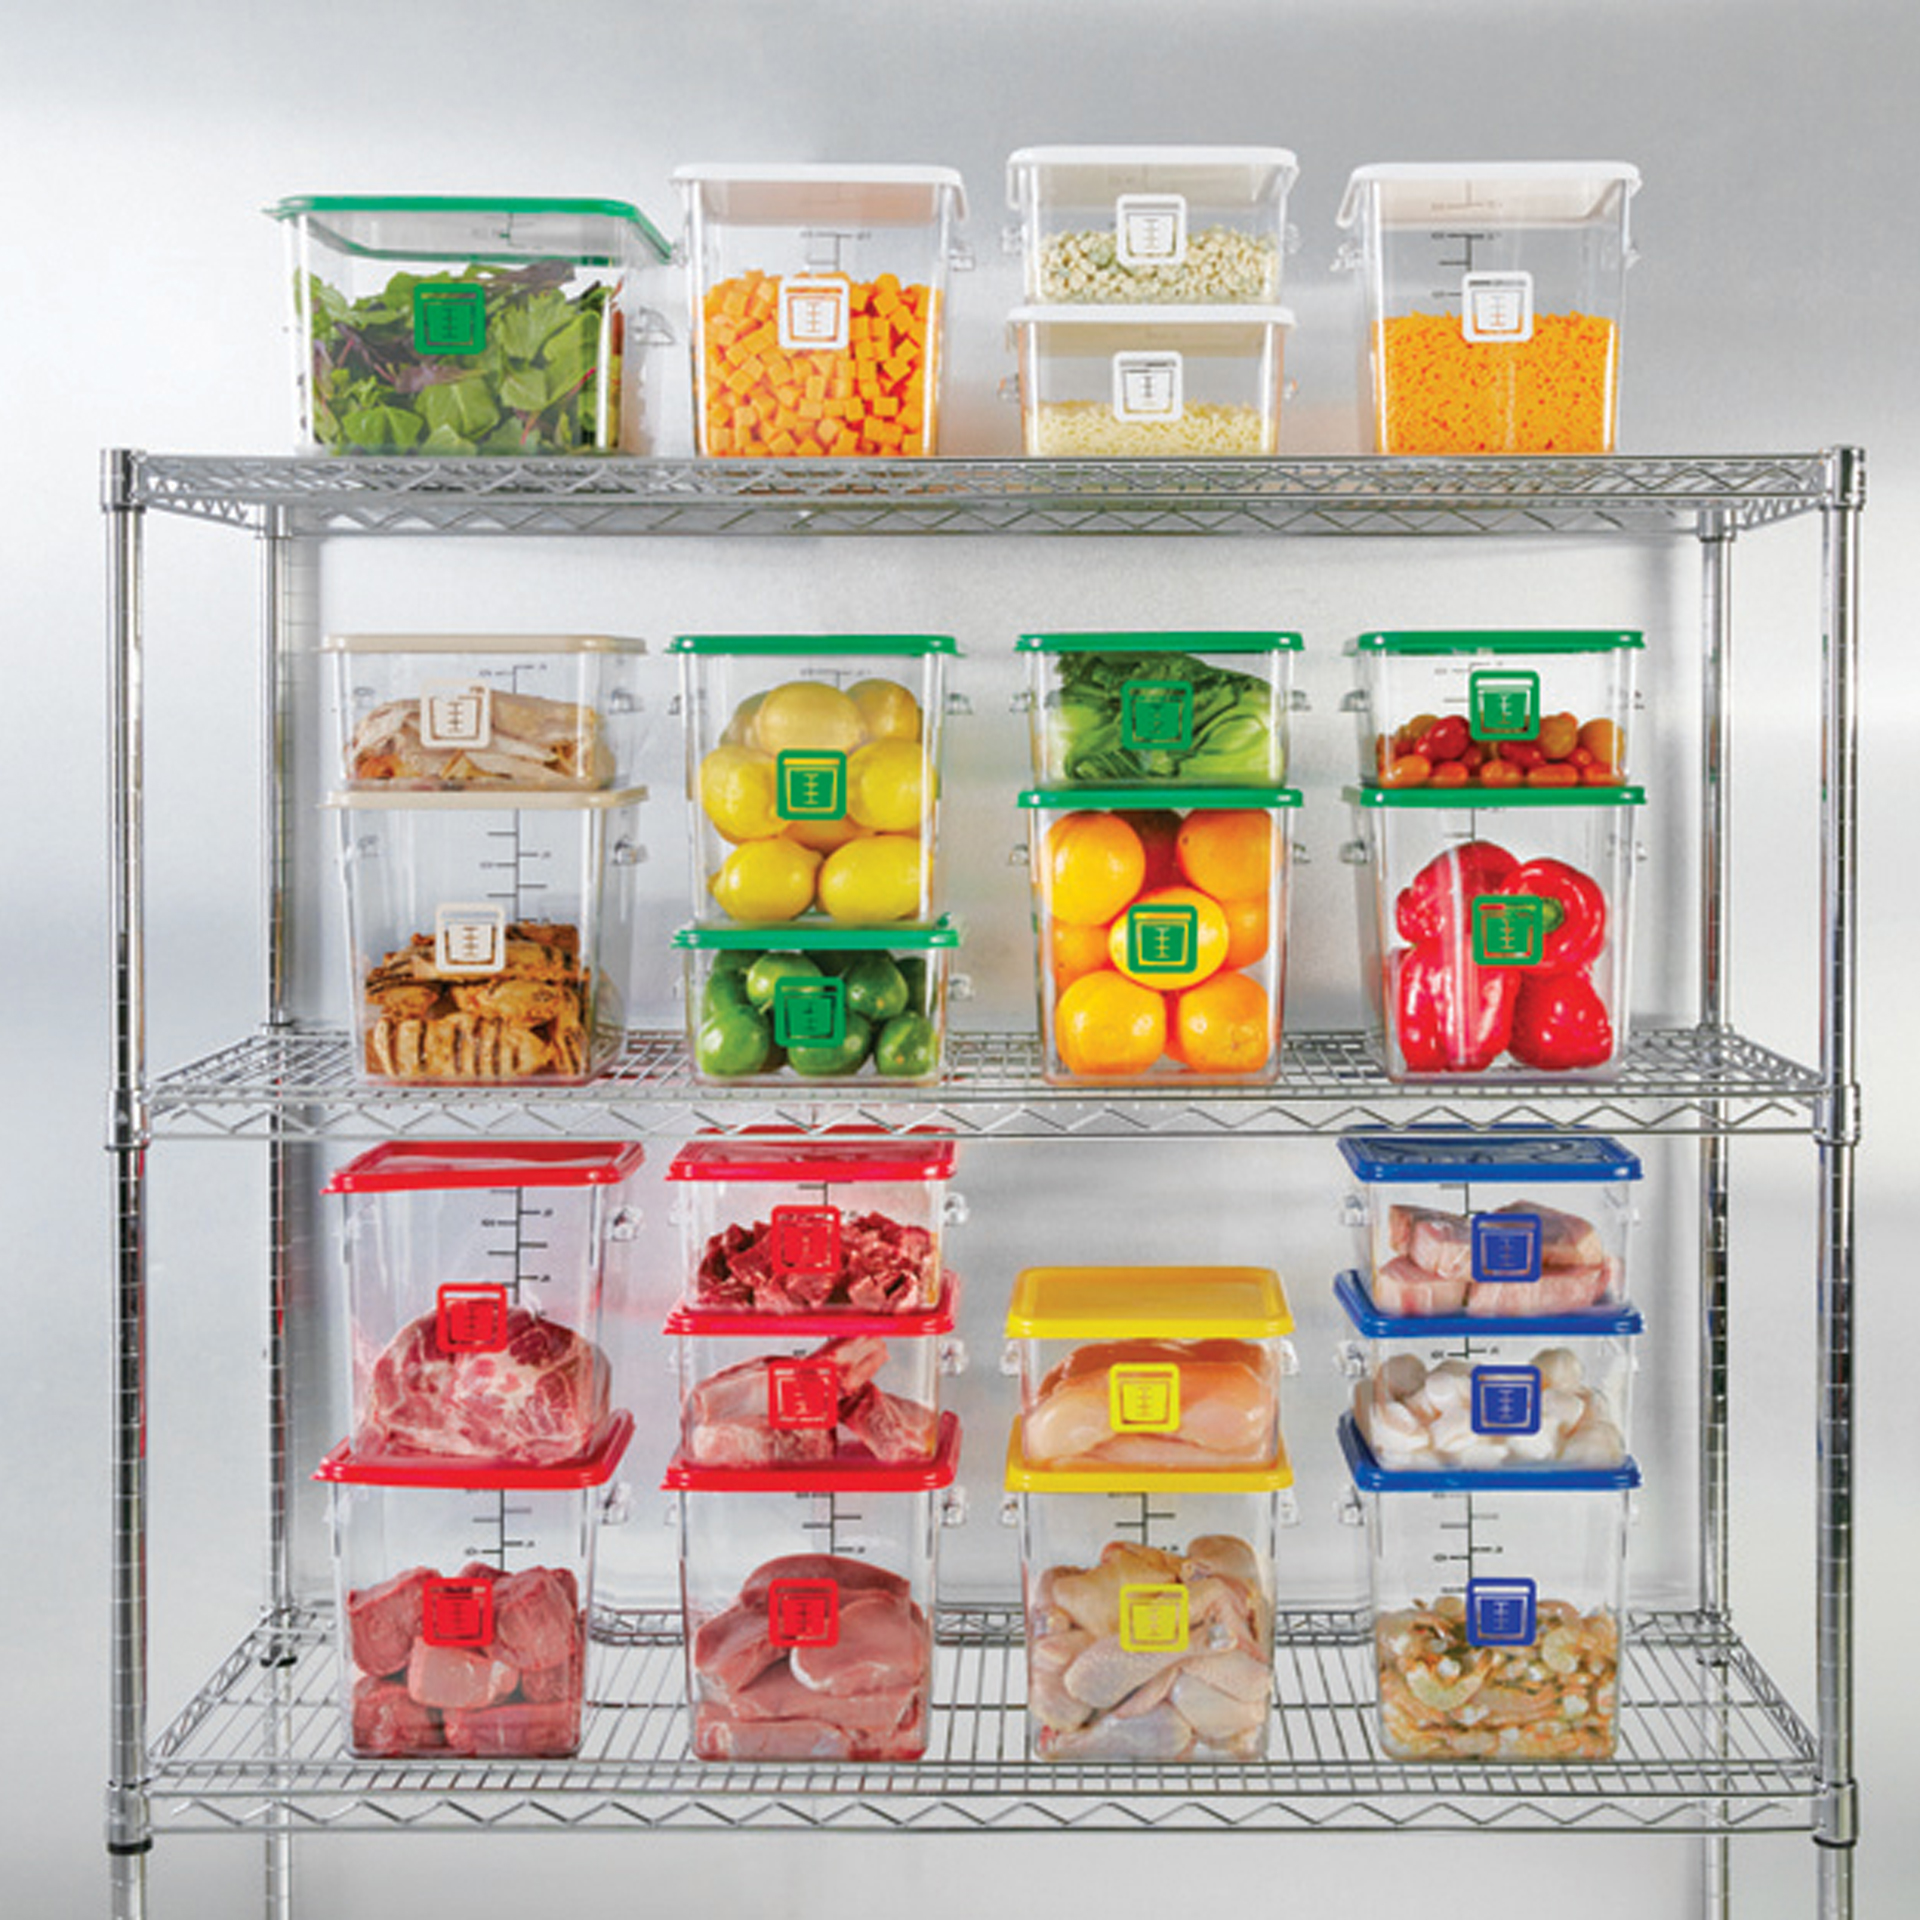 กล่องเก็บวัตถุดิบอาหารสี่เหลี่ยม Color-Coded Square Container Clear ขนาด 4 qt สีเขียว